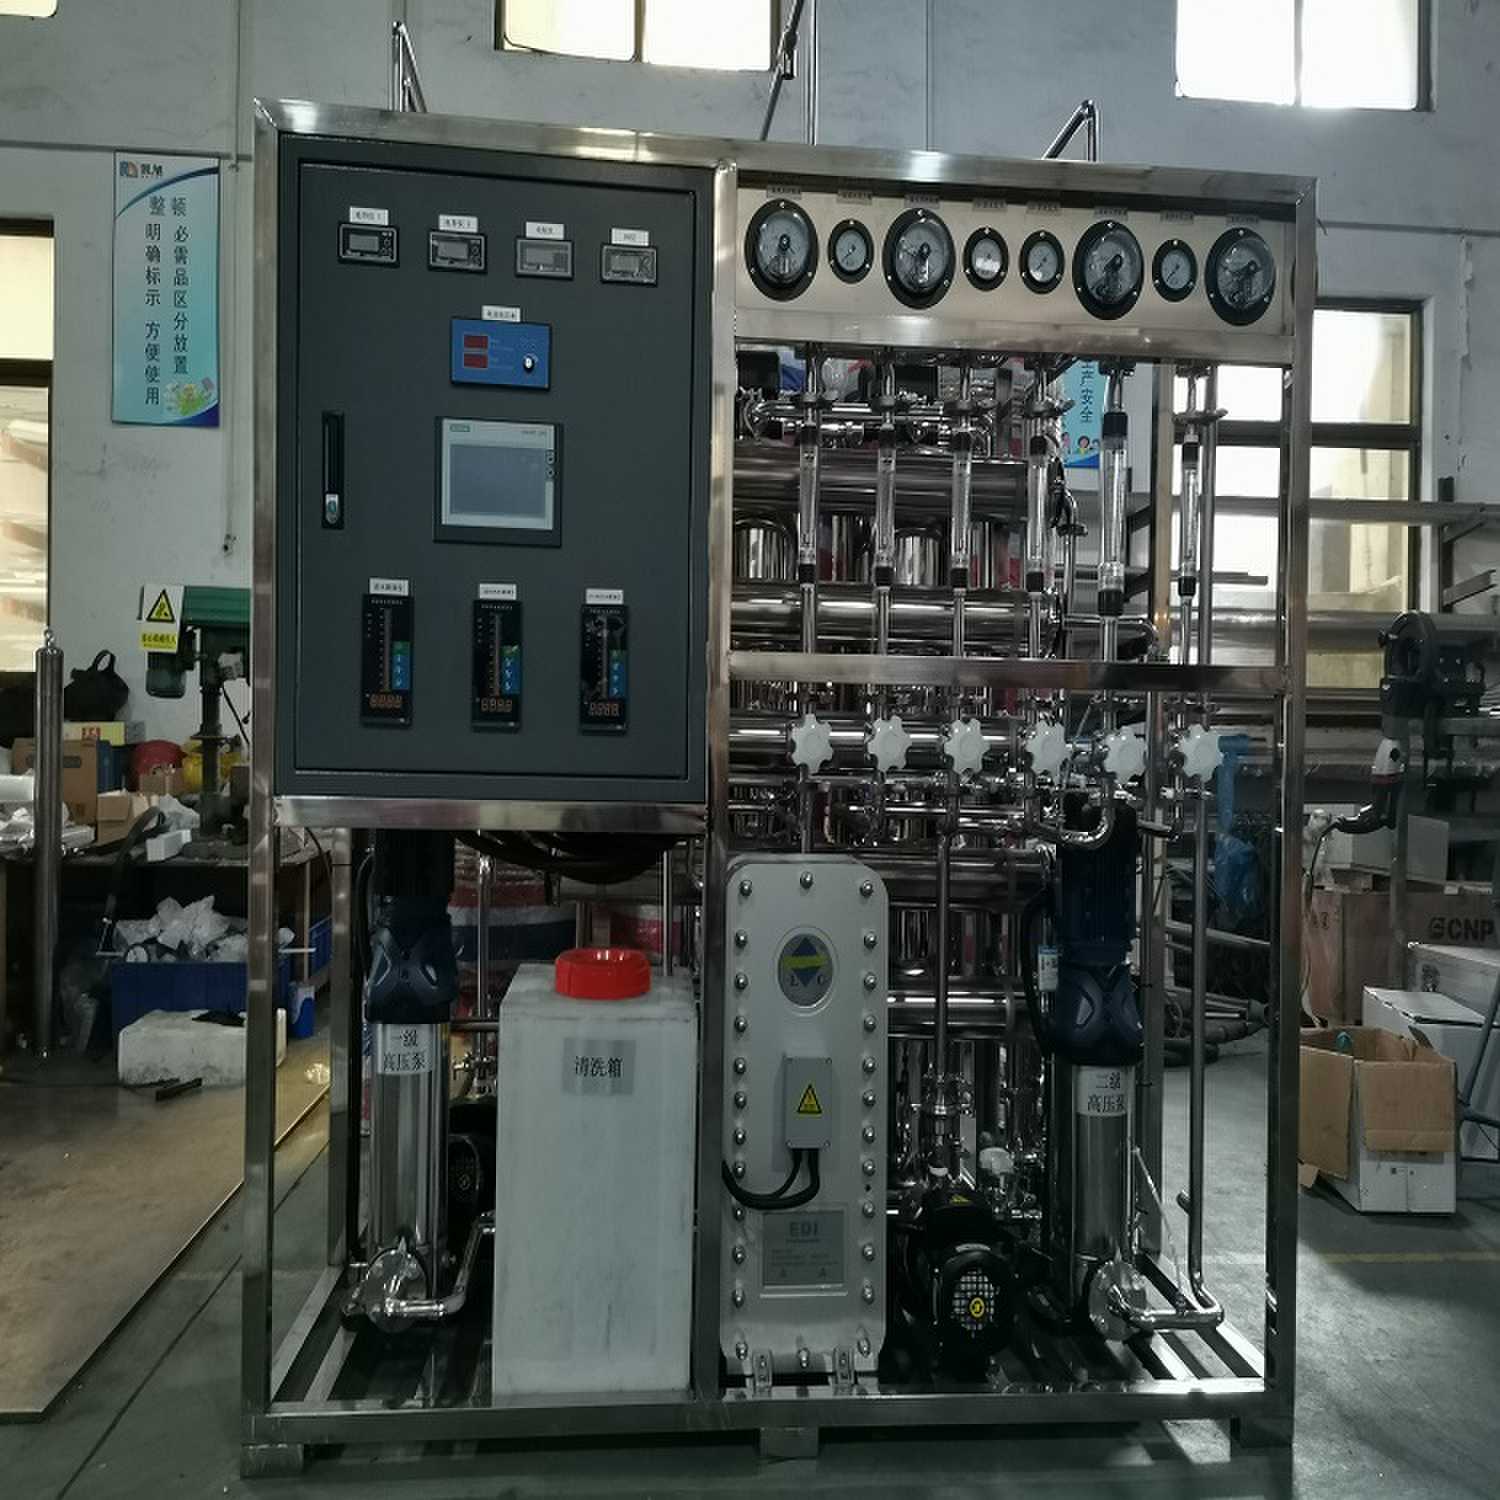 凯旭kx2电子厂高纯水设备